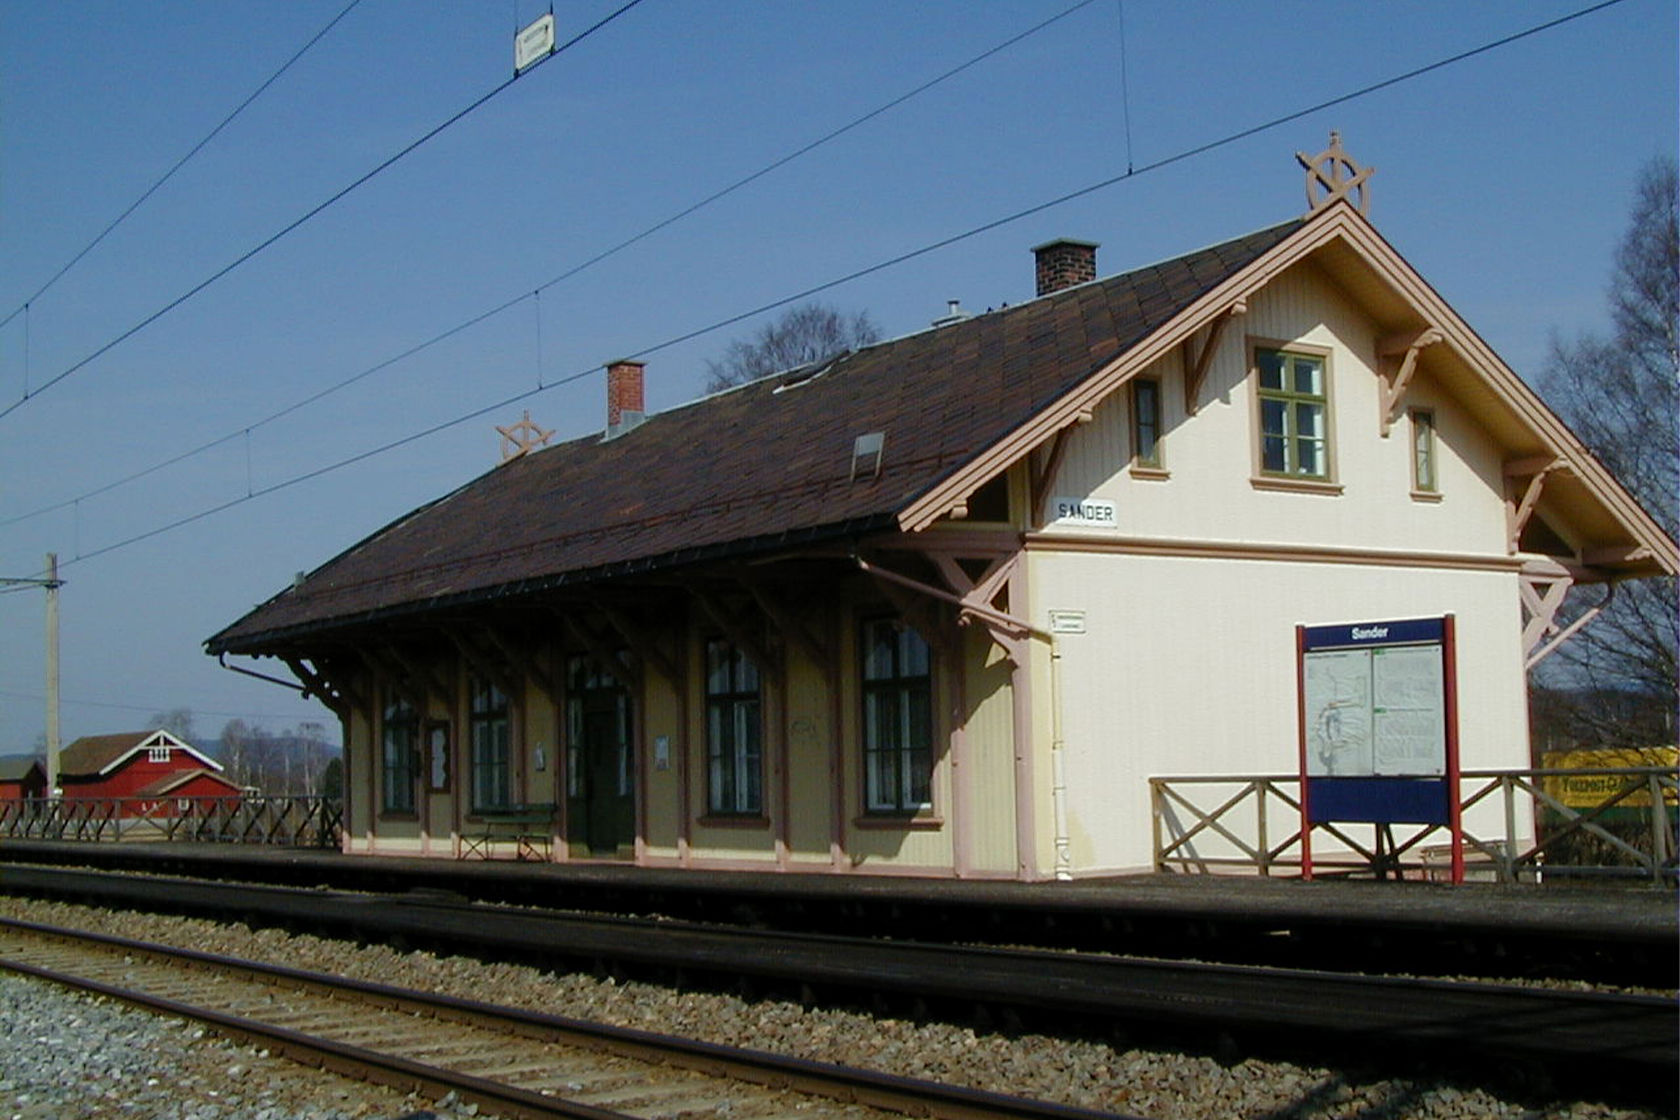 Tracks and station building at Sander station